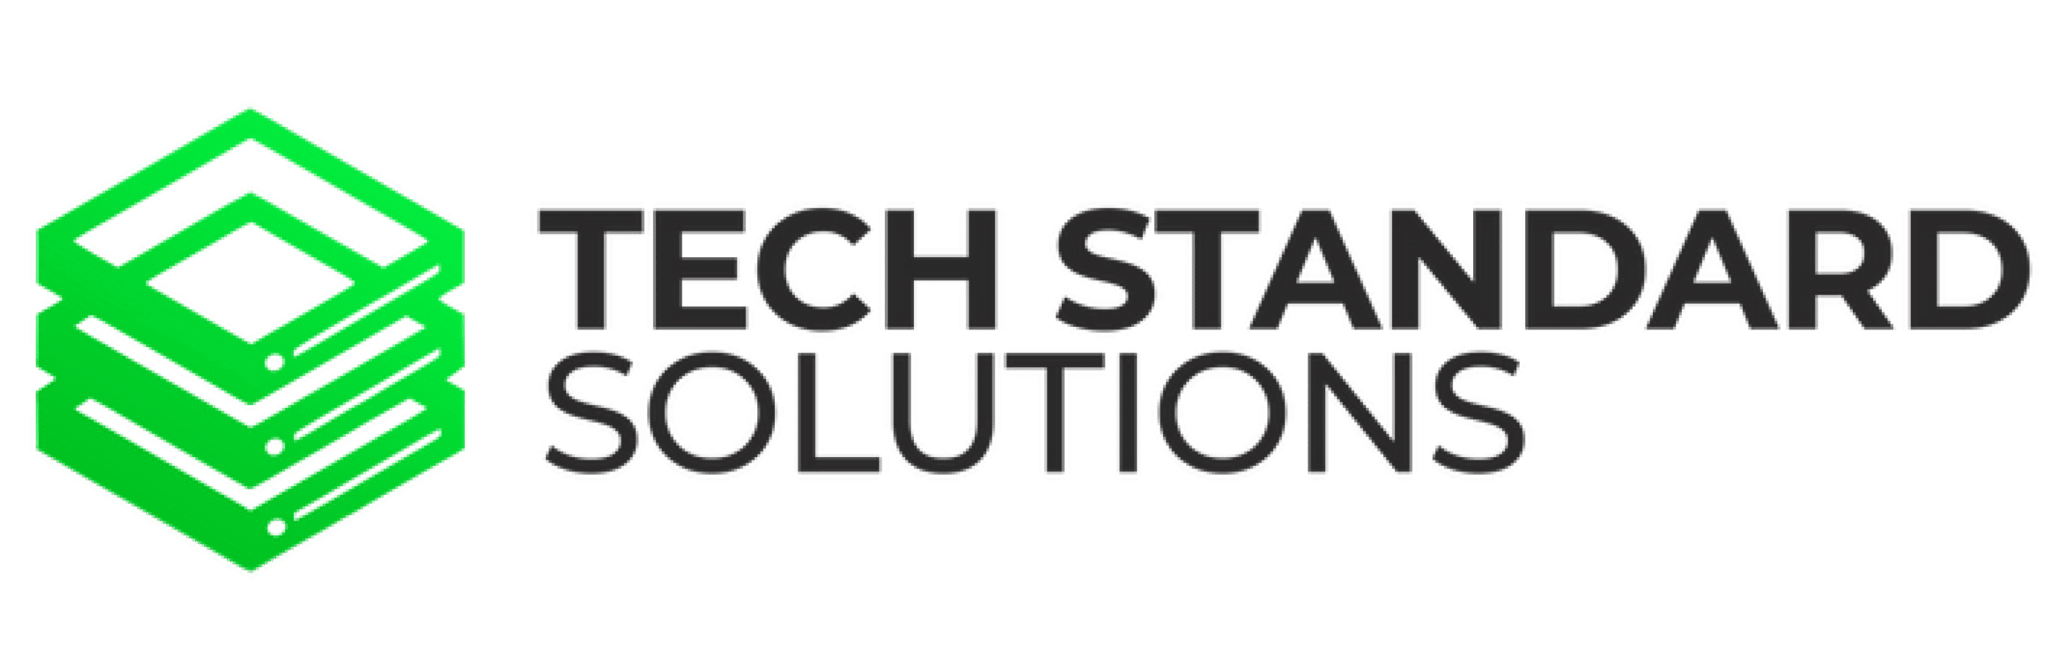 Tech Standard Solutions logo